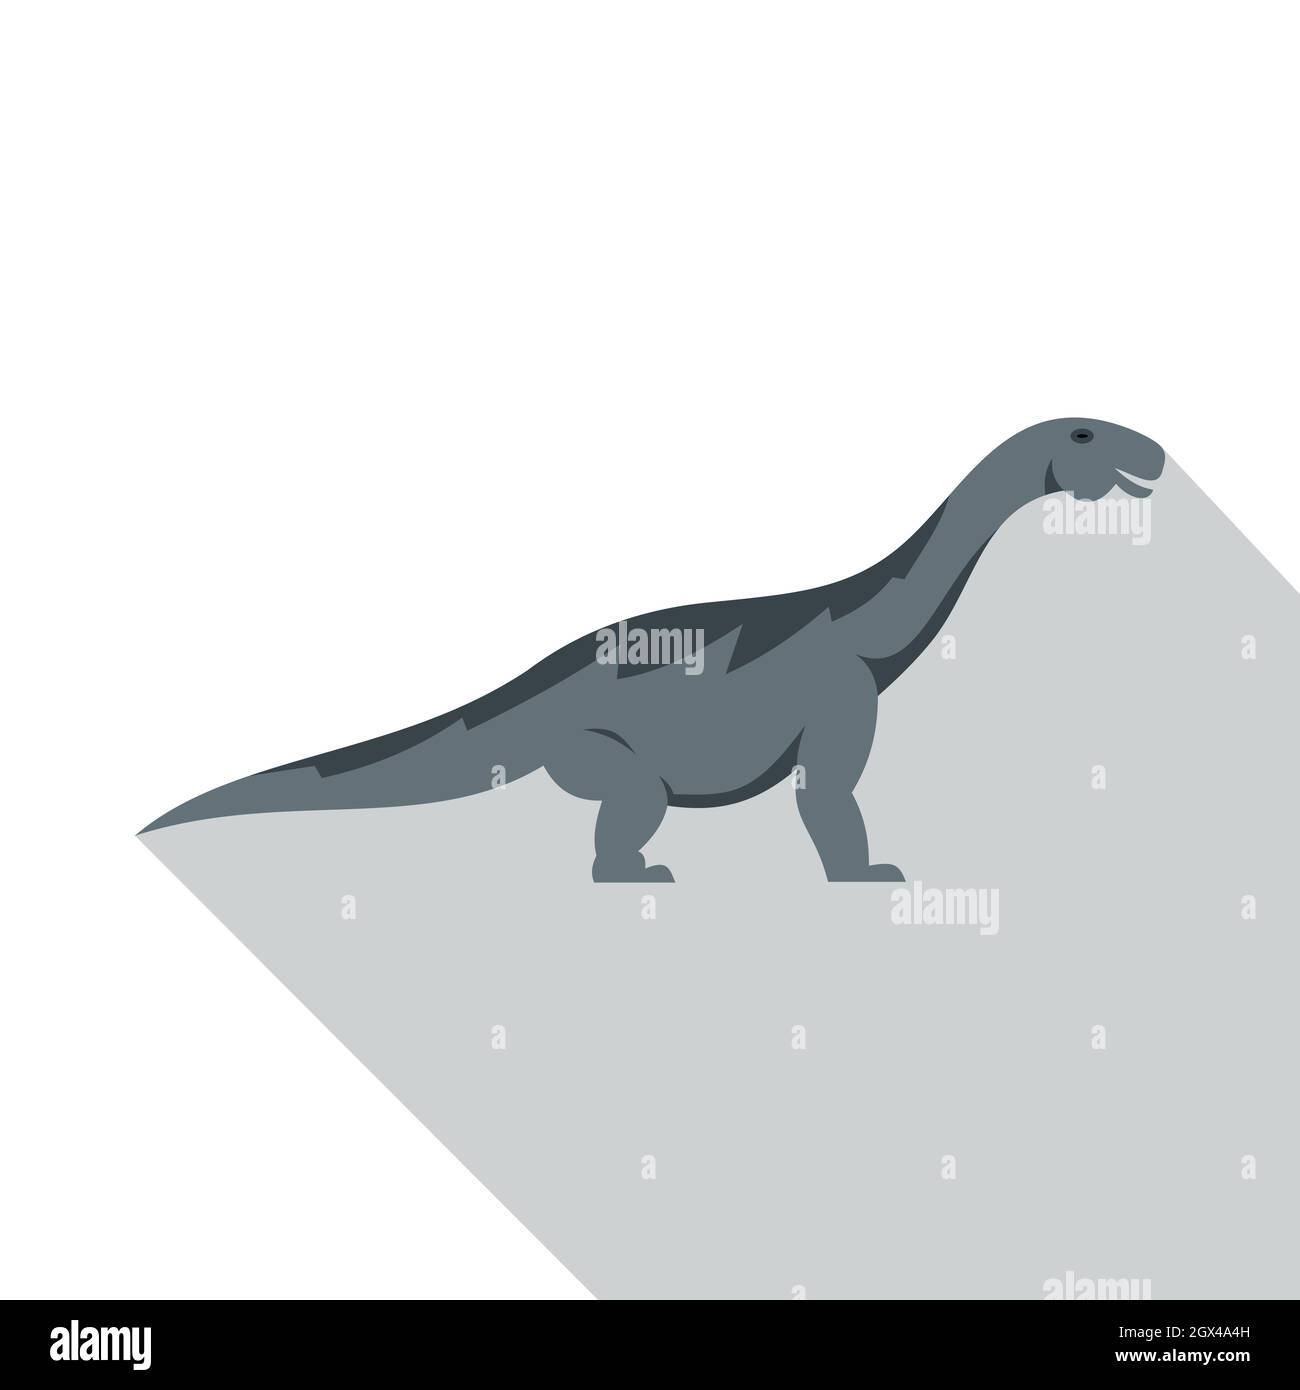 Grey titanosaurus dinosaur icon, flat style Stock Vector